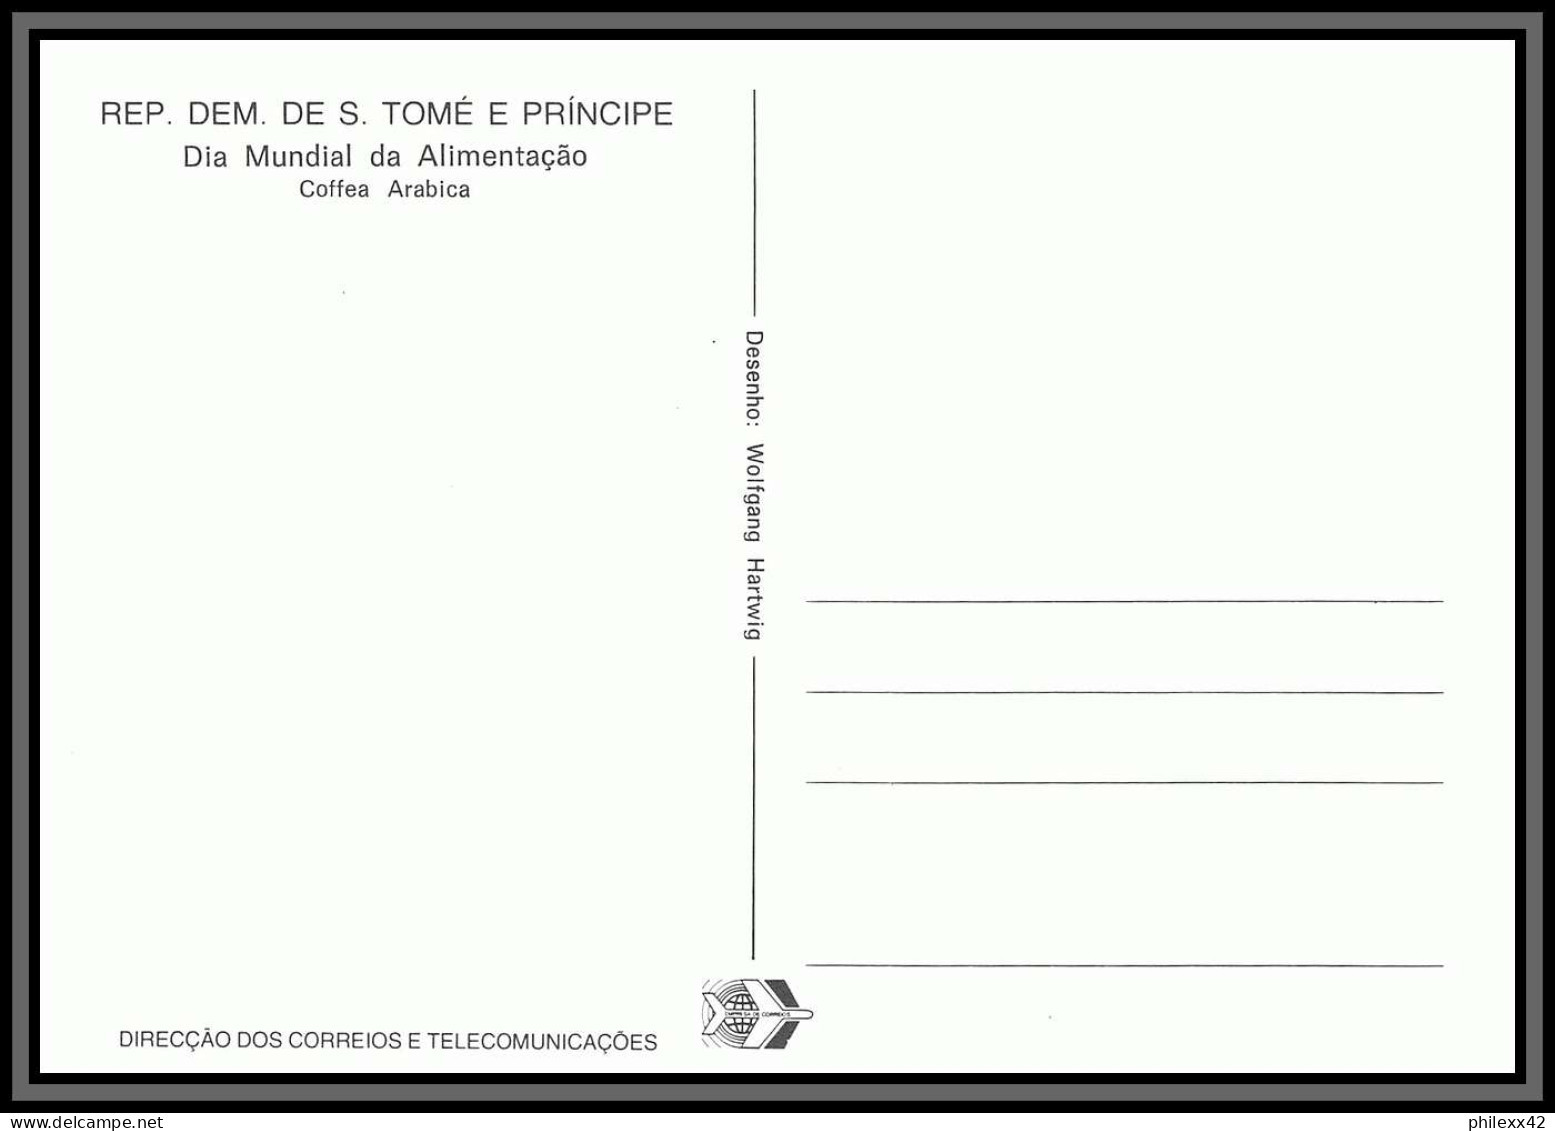 5851 Carte Maximum (card) S Tome E Principe Mi N°744/749 Fruits Fruts 1981 Ananas Café Cacao Mangue Fdc Coffee - Fruits